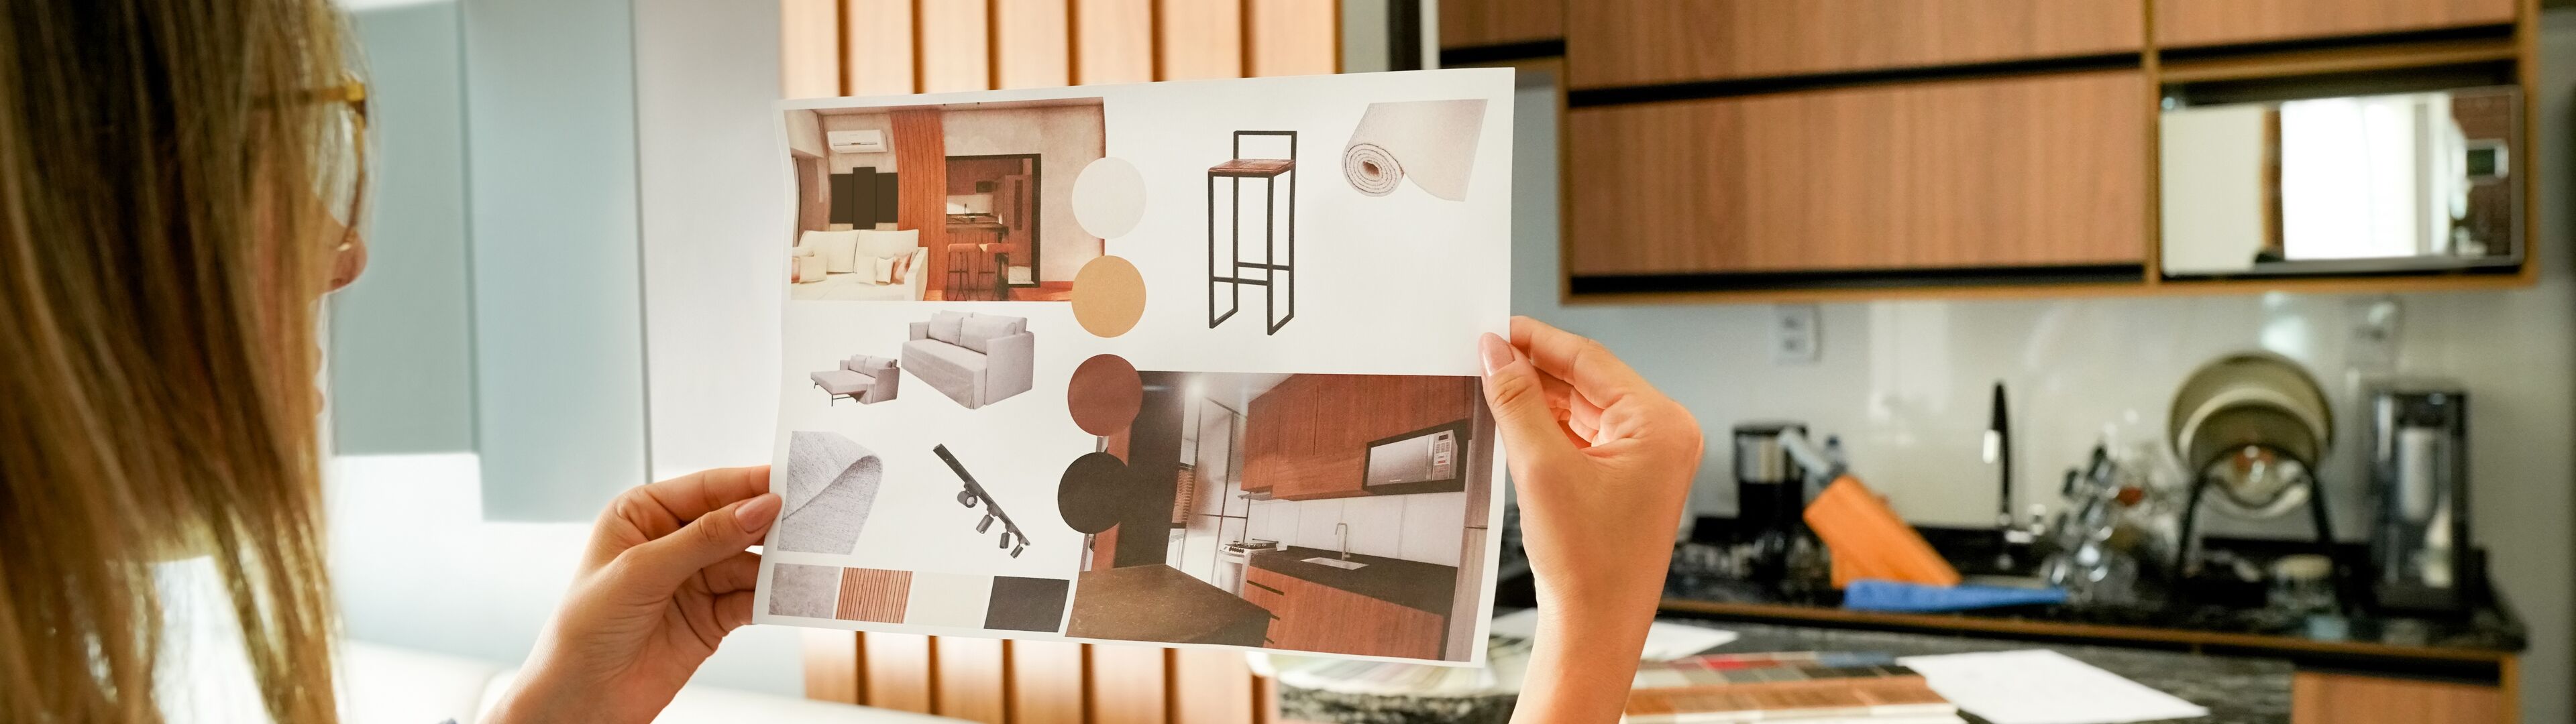 Une personne examine un panneau d'ambiance comprenant divers éléments de design intérieur pour un projet de rénovation domiciliaire.